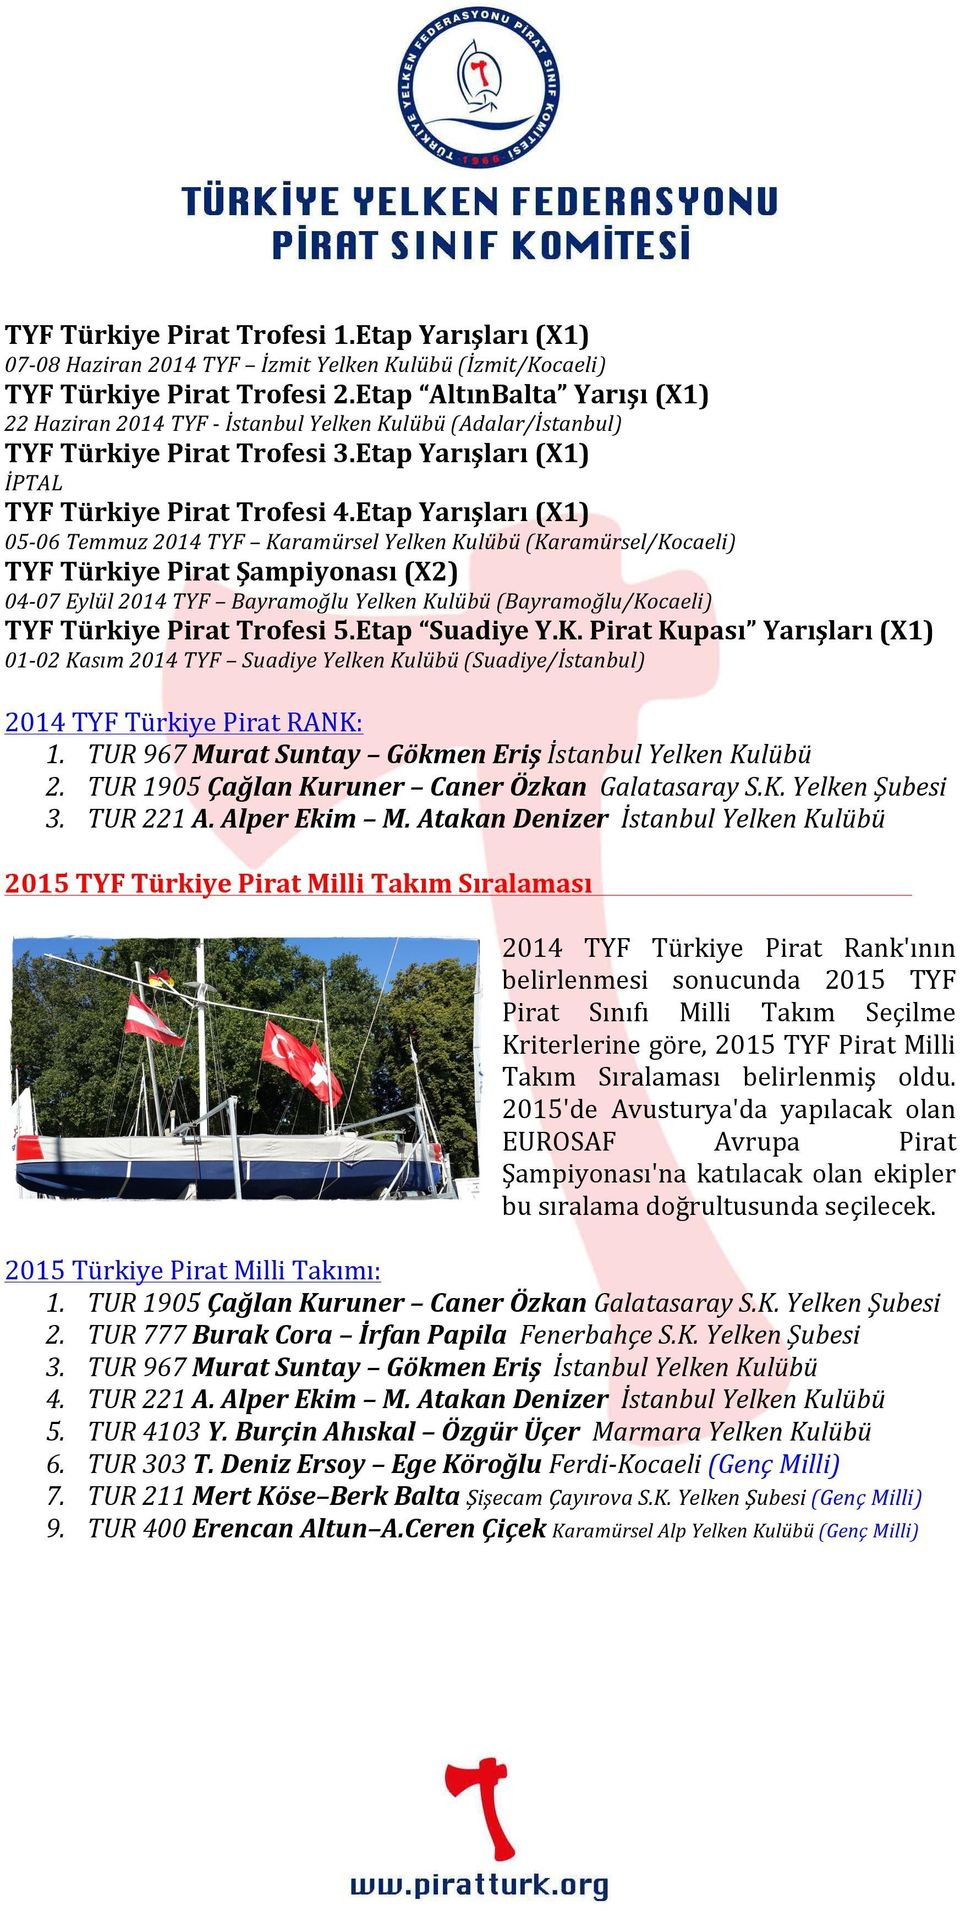 Etap Yarışları (X1) 05-06 Temmuz 2014 TYF Karamürsel Yelken Kulübü (Karamürsel/Kocaeli) TYF Türkiye Pirat Şampiyonası (X2) 04-07 Eylül 2014 TYF Bayramoğlu Yelken Kulübü (Bayramoğlu/Kocaeli) TYF